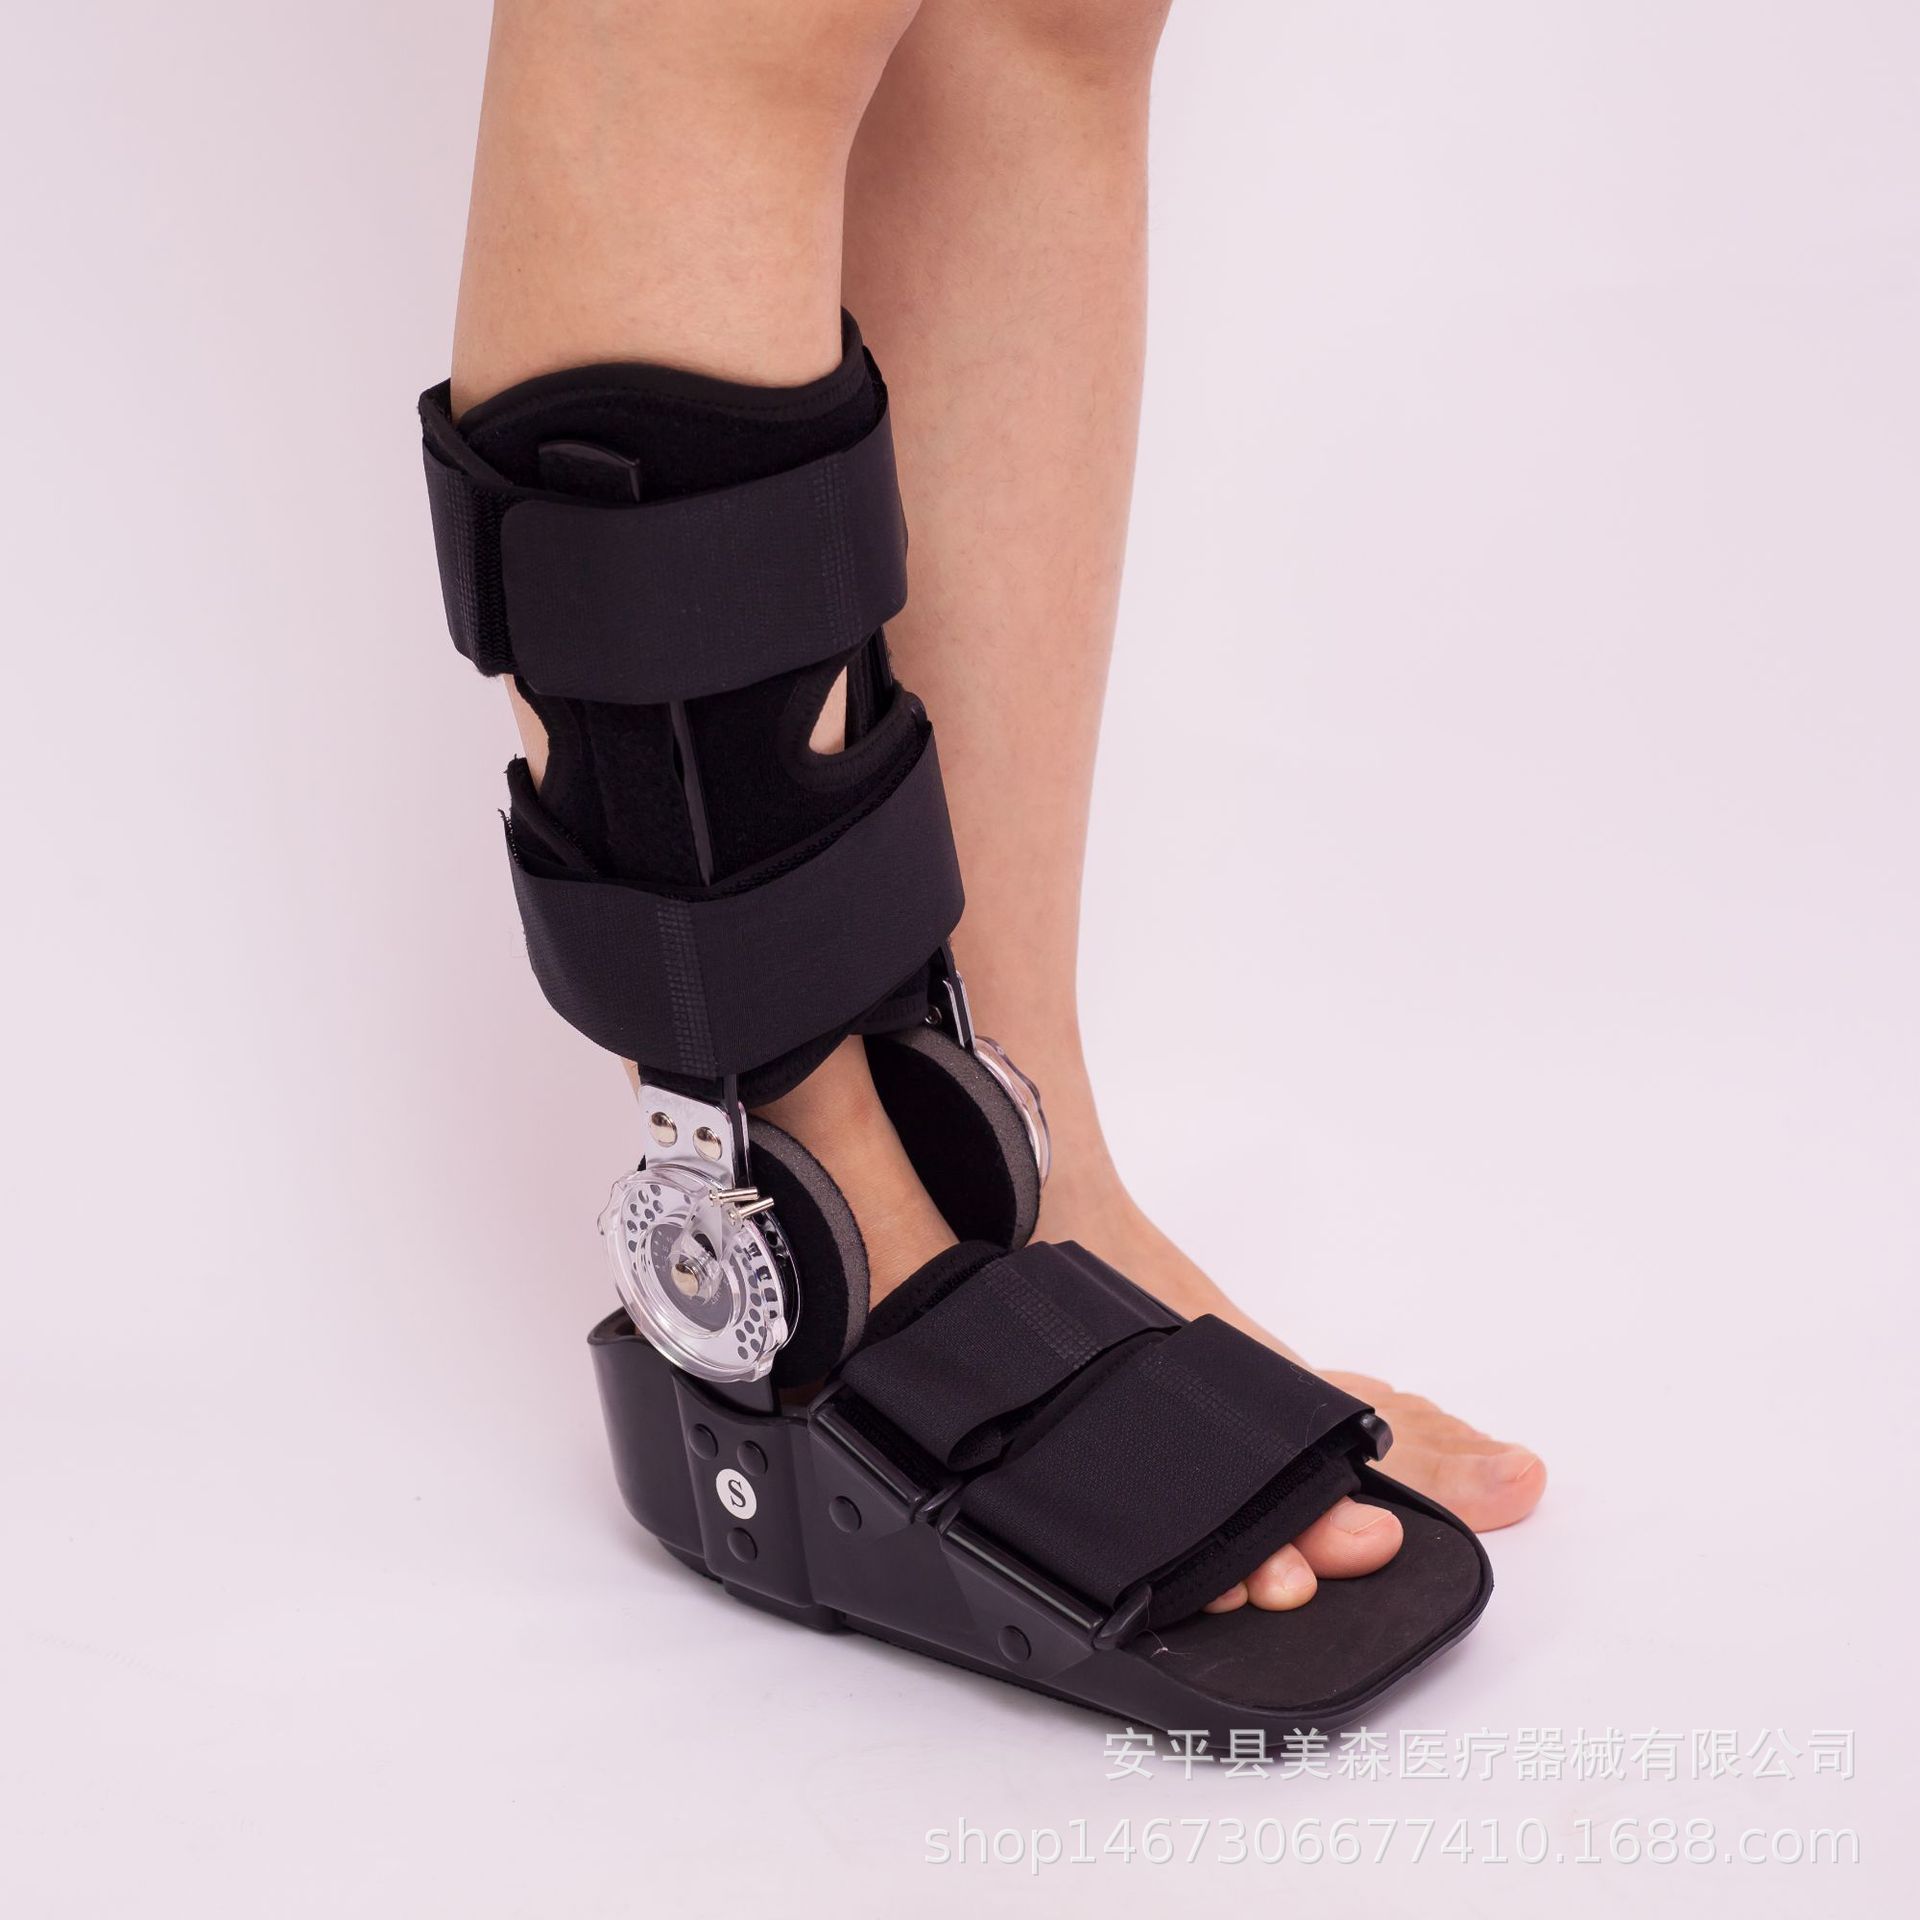 卡盘高帮助行鞋 跟腱靴 踝关节固定支具 足底踝骨护具